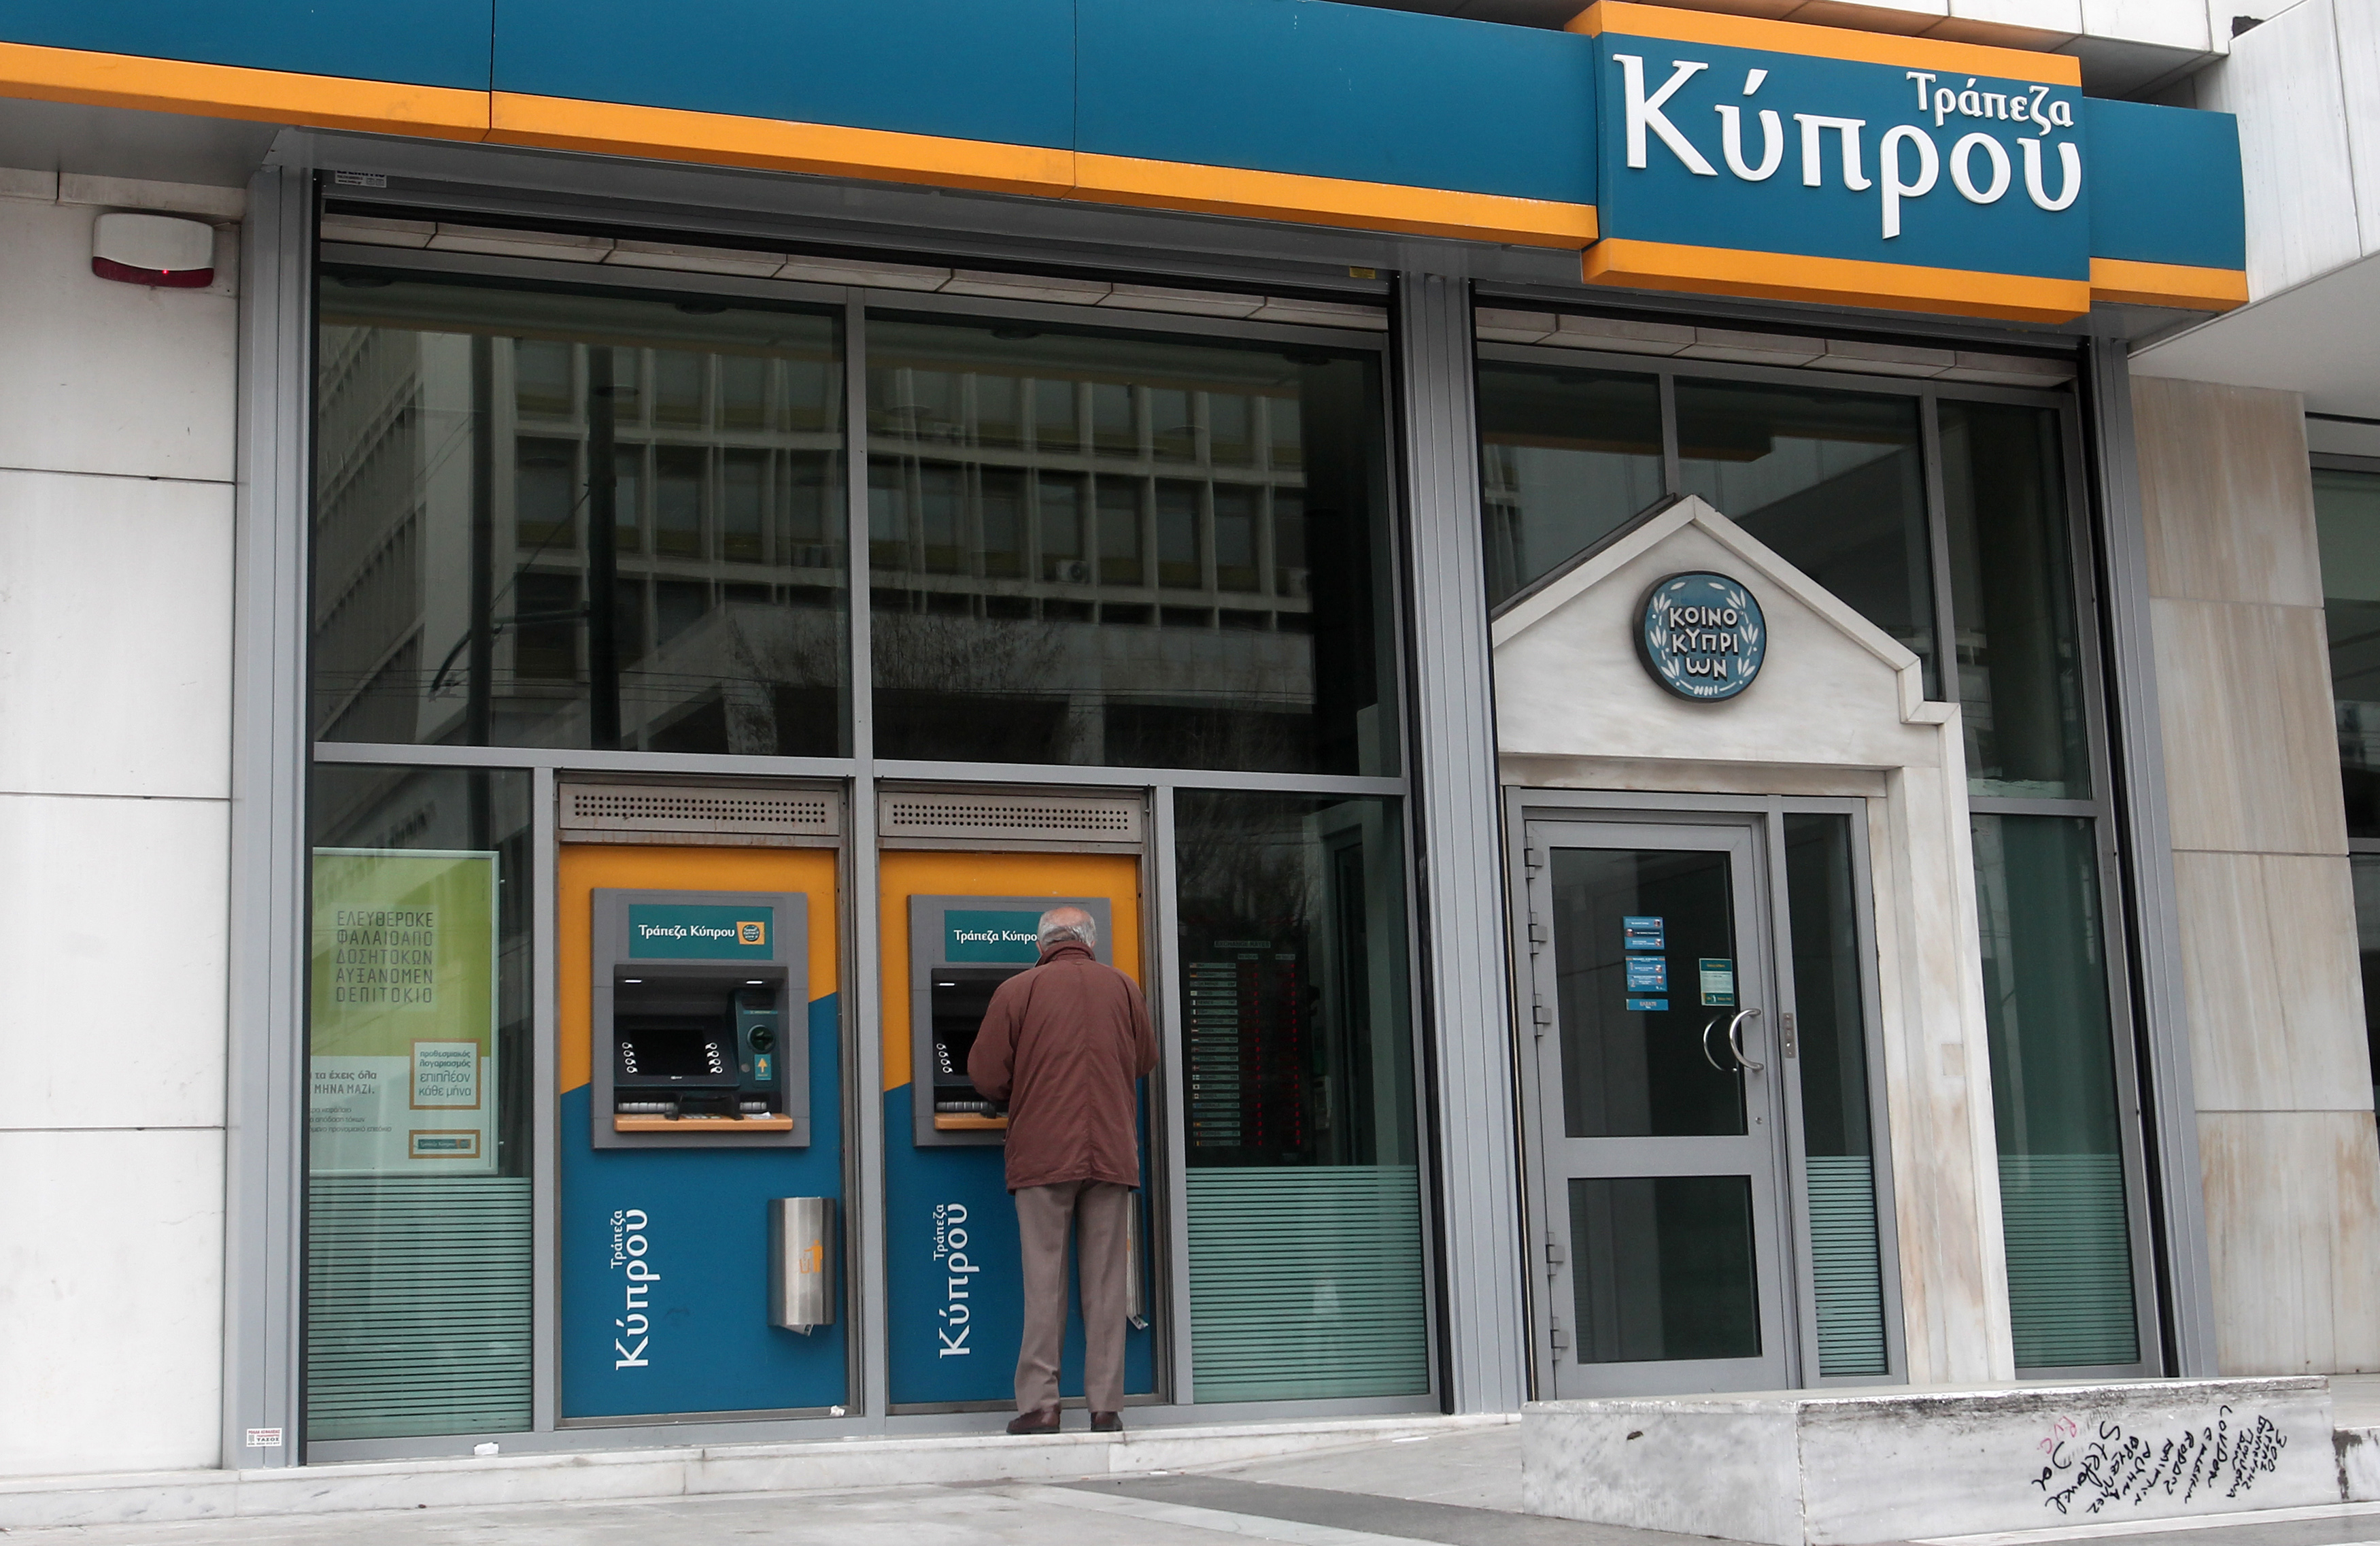 Ειδοποιήσεις προς δανειολήπτες για εκποίηση περιουσιών στέλνουν οι κυπριακές τράπεζες